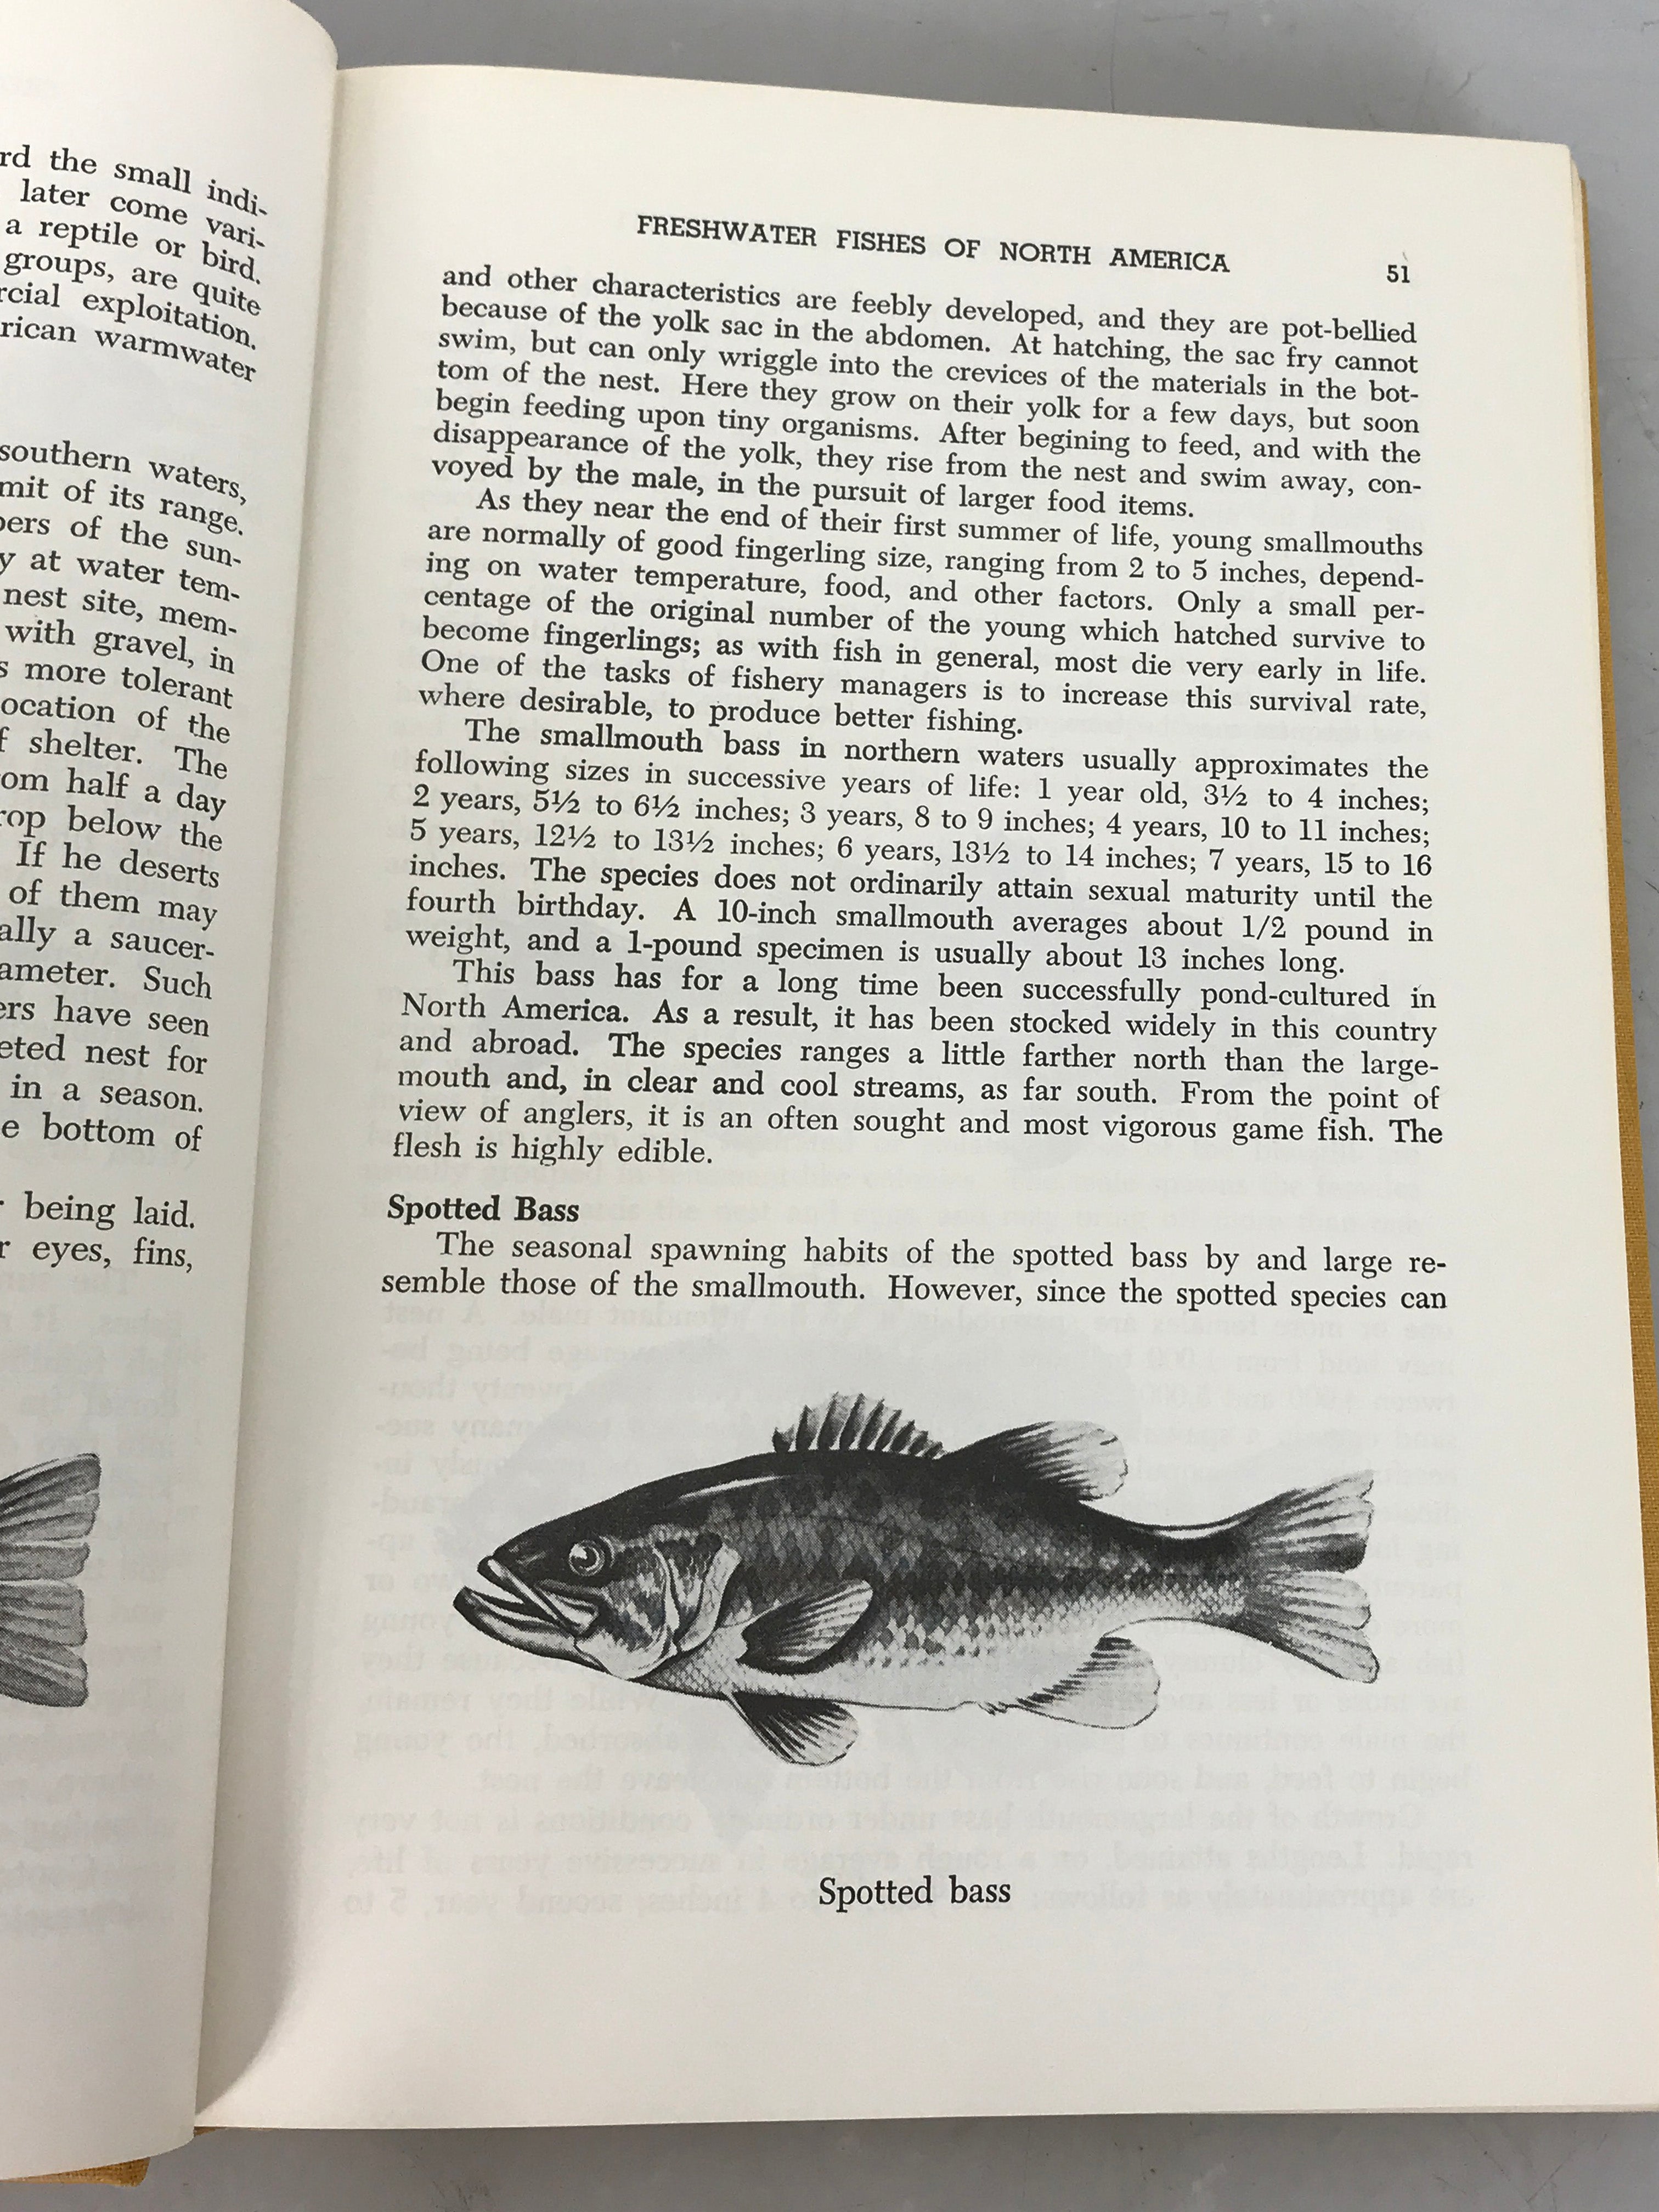 Lot of 2 Fishery Books 1971-1975 HC